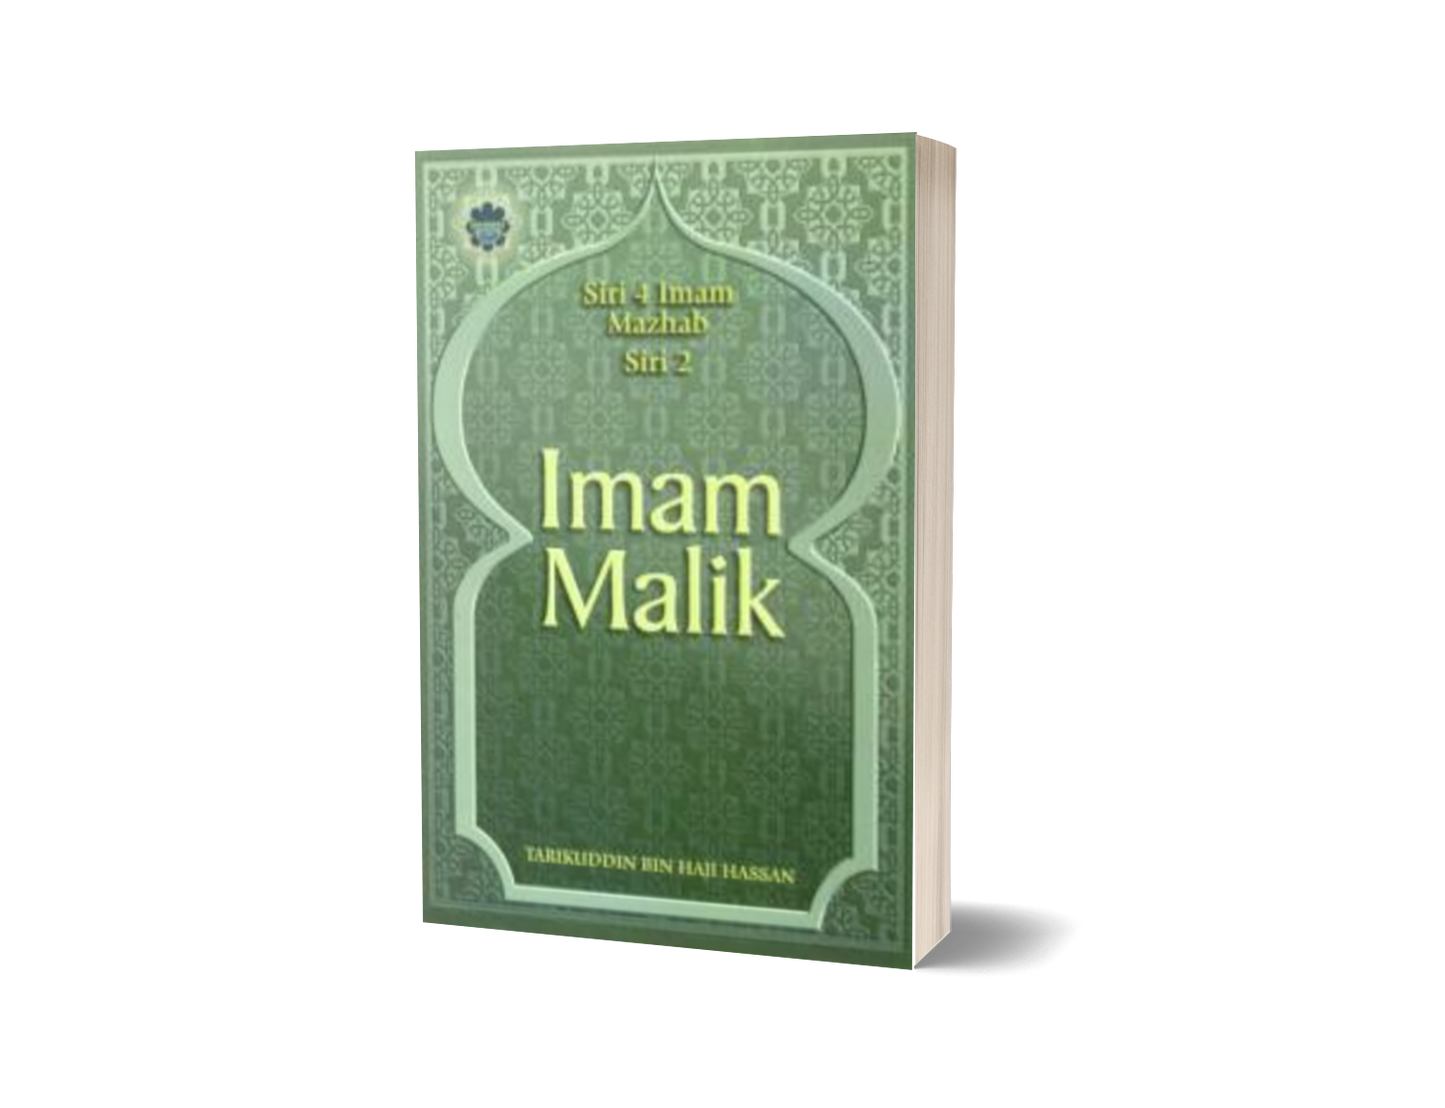 Siri 2: Imam Malik